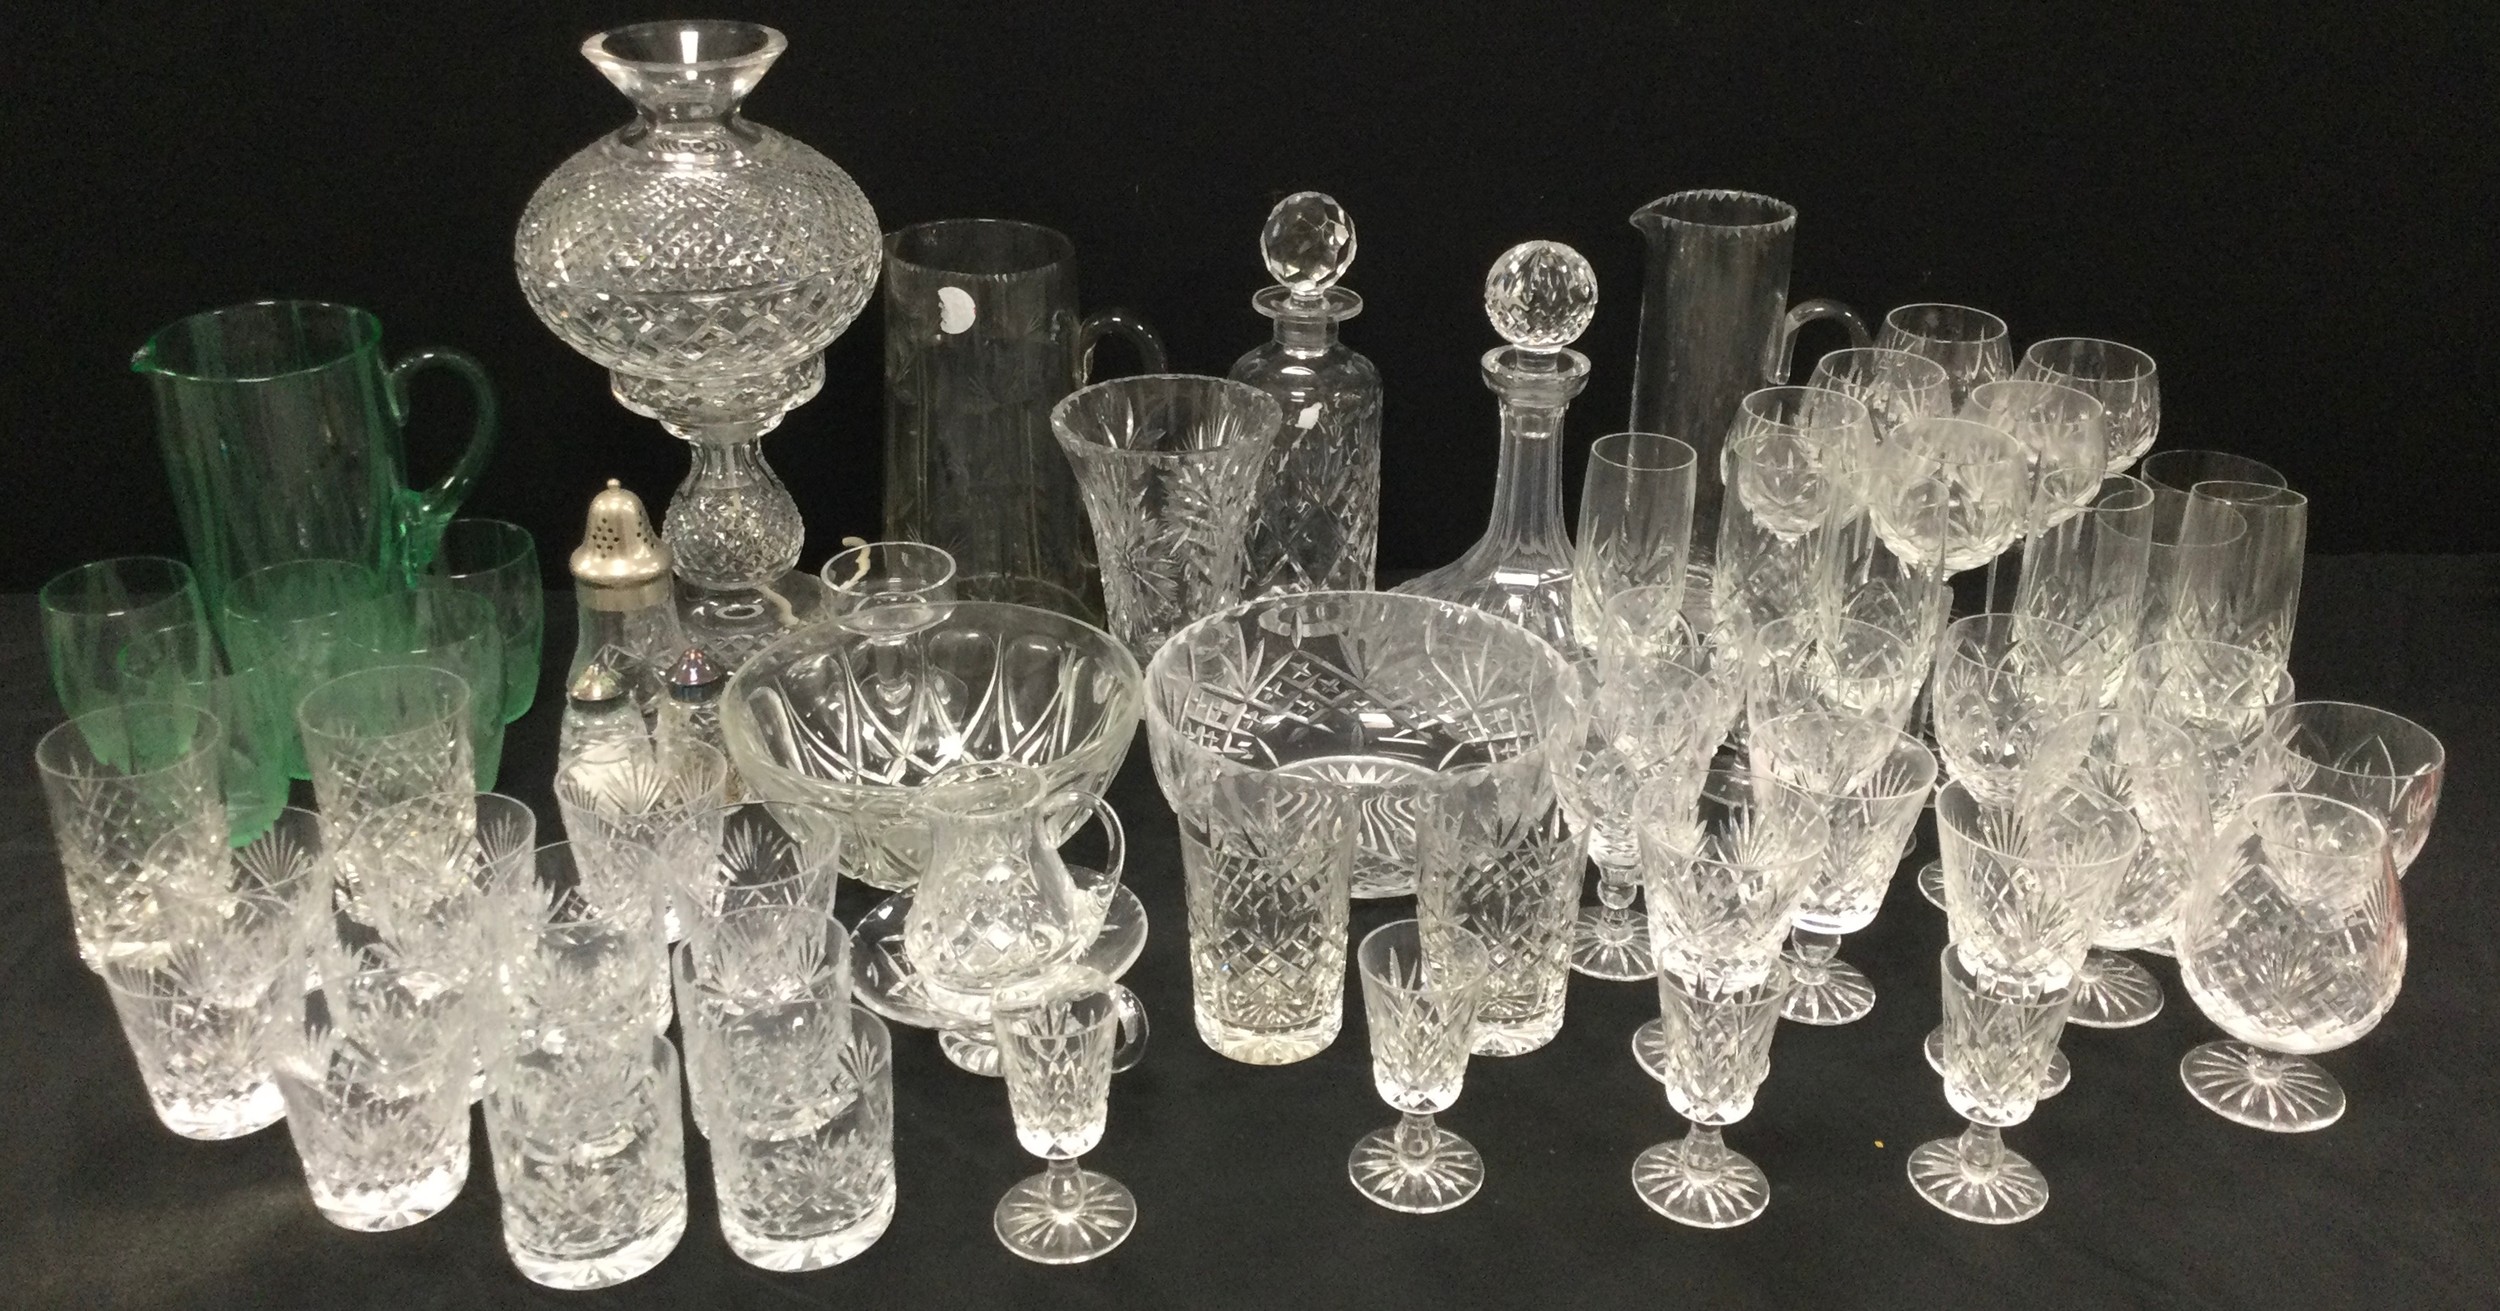 Glass ware - cut glass mushroom lamp, 35cm high, six cut wine glasses, six champagne flutes, six